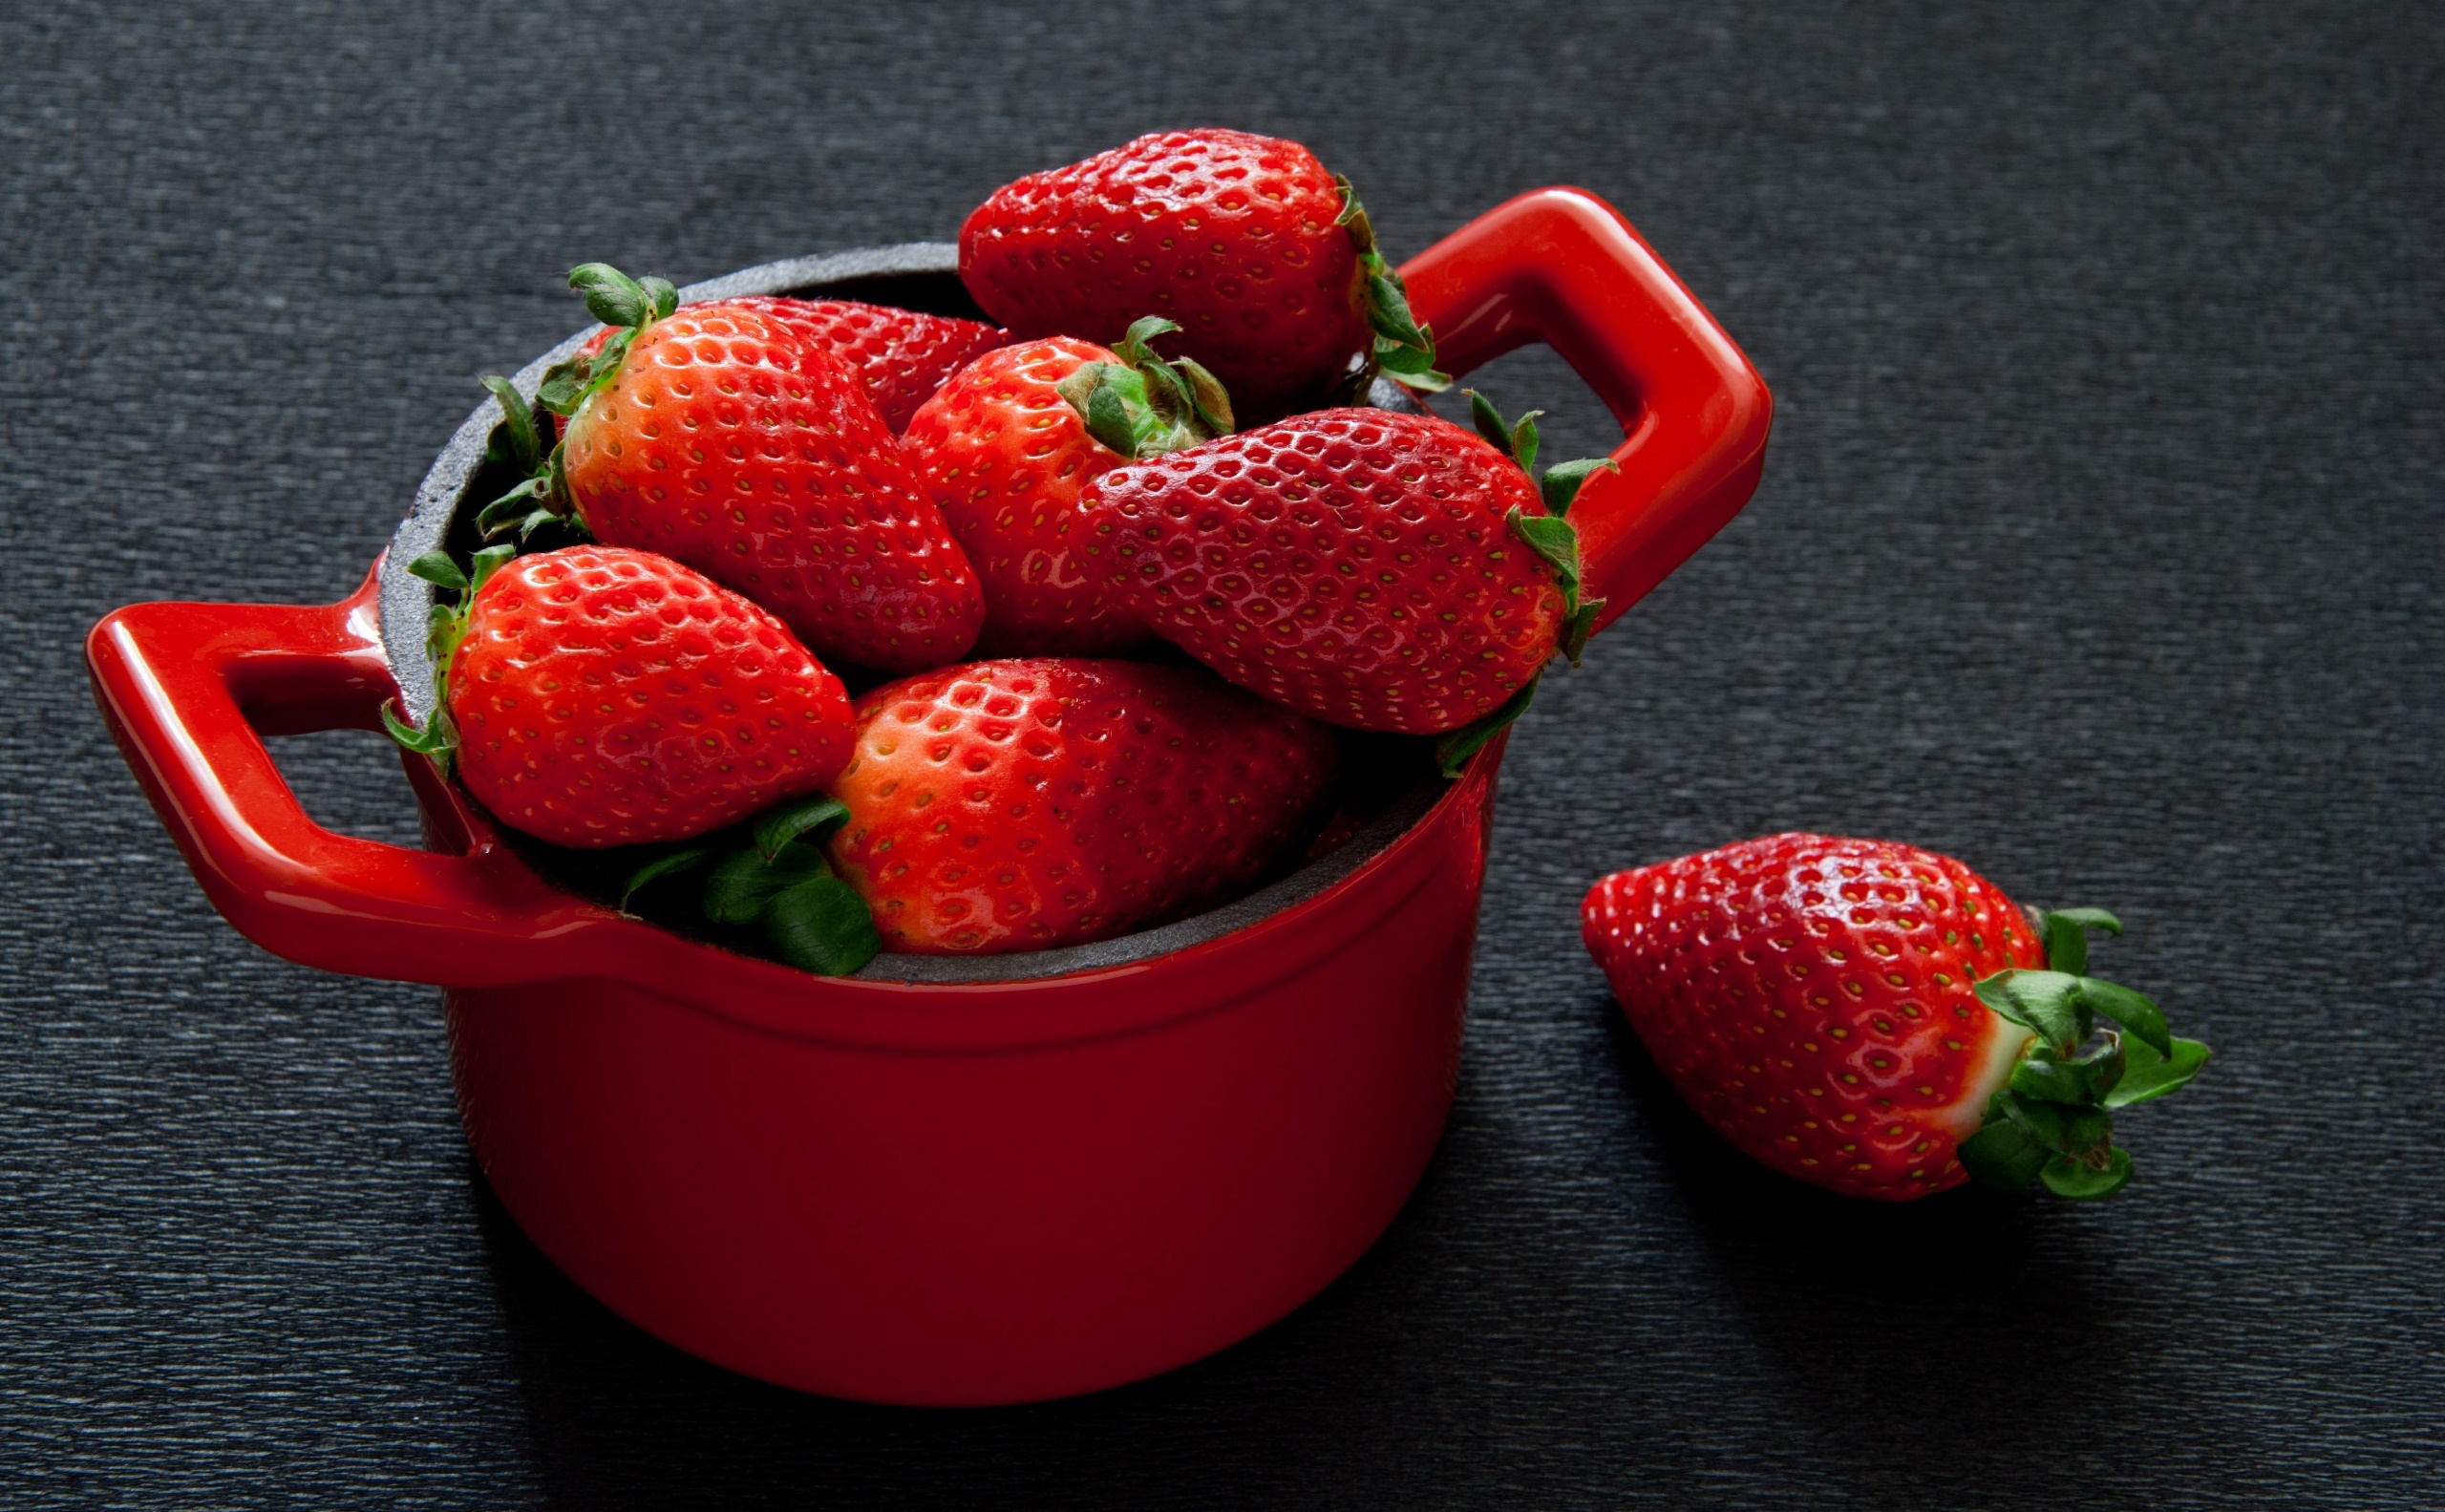 General 2560x1583 red food fruit strawberries berries red berries